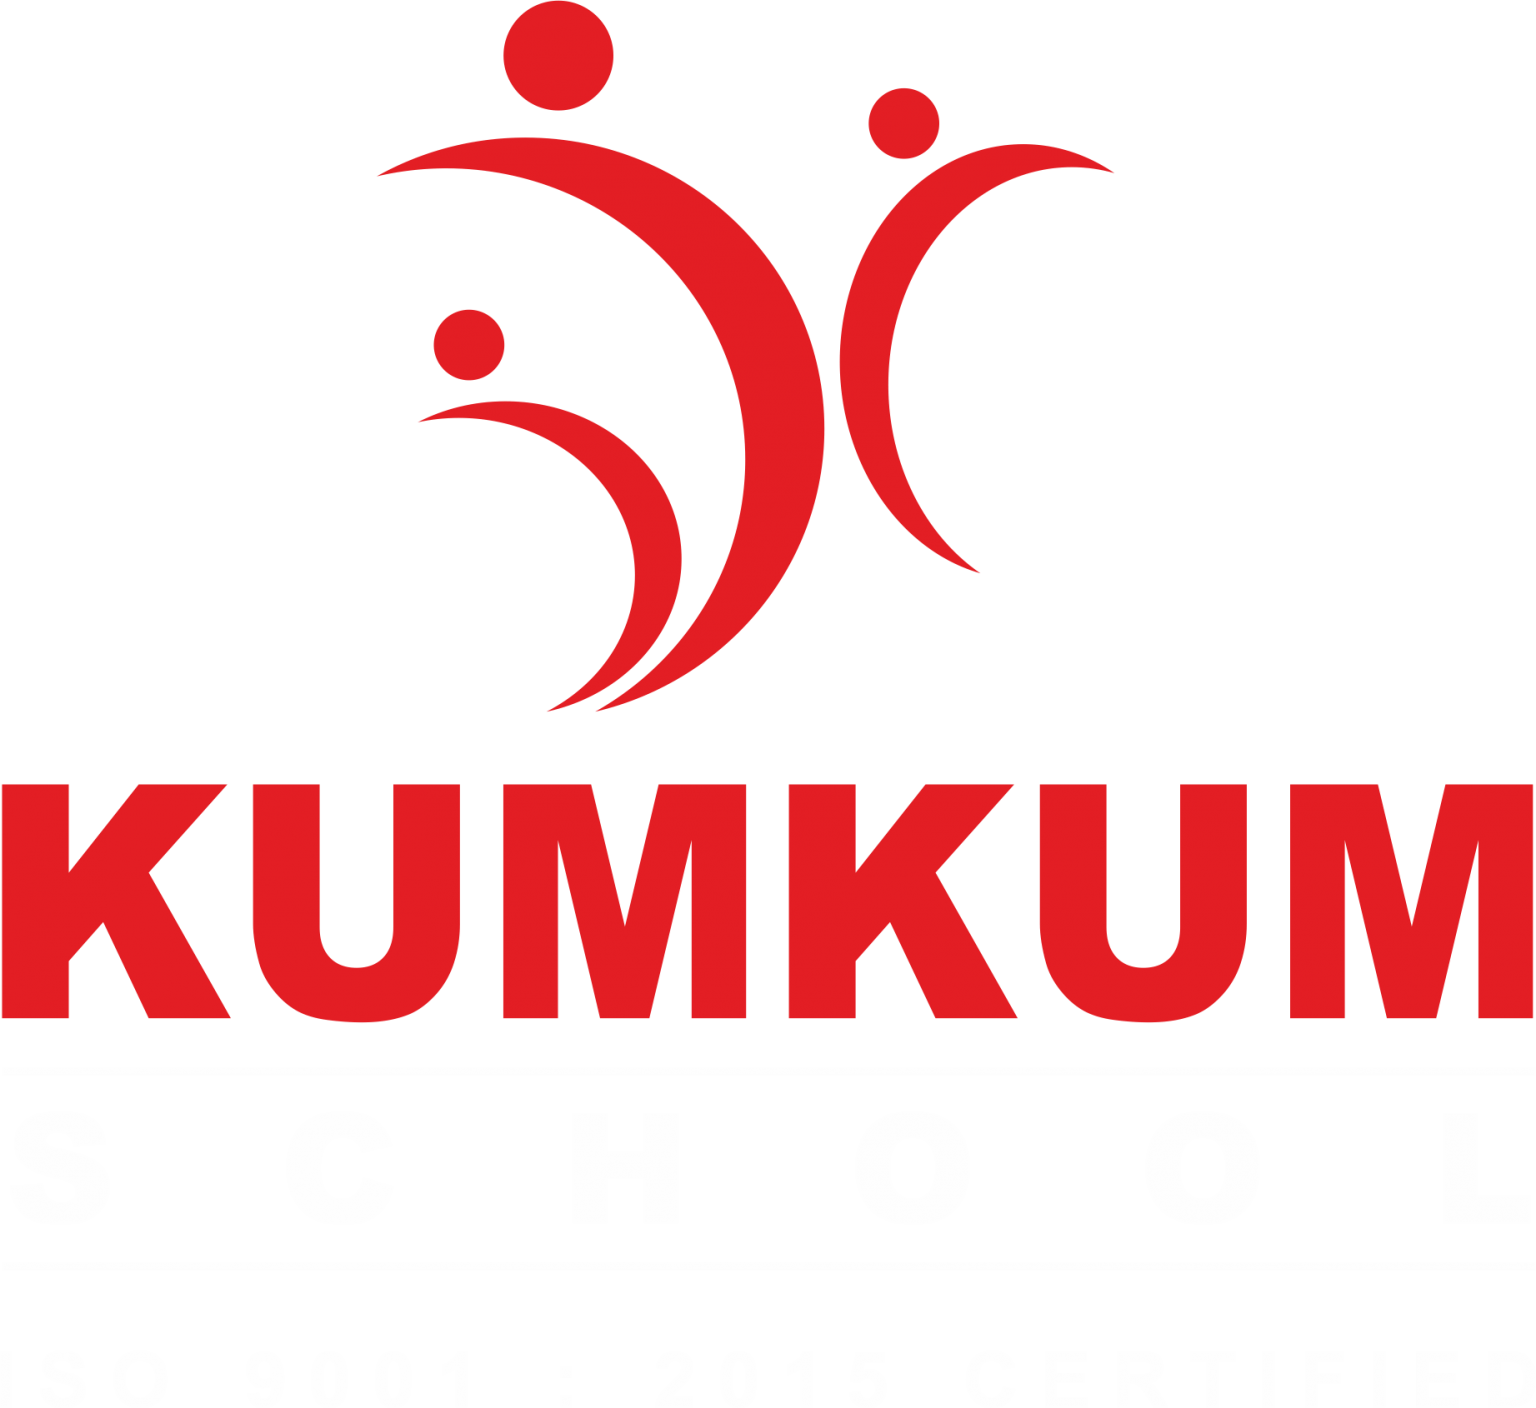 Kumkum School